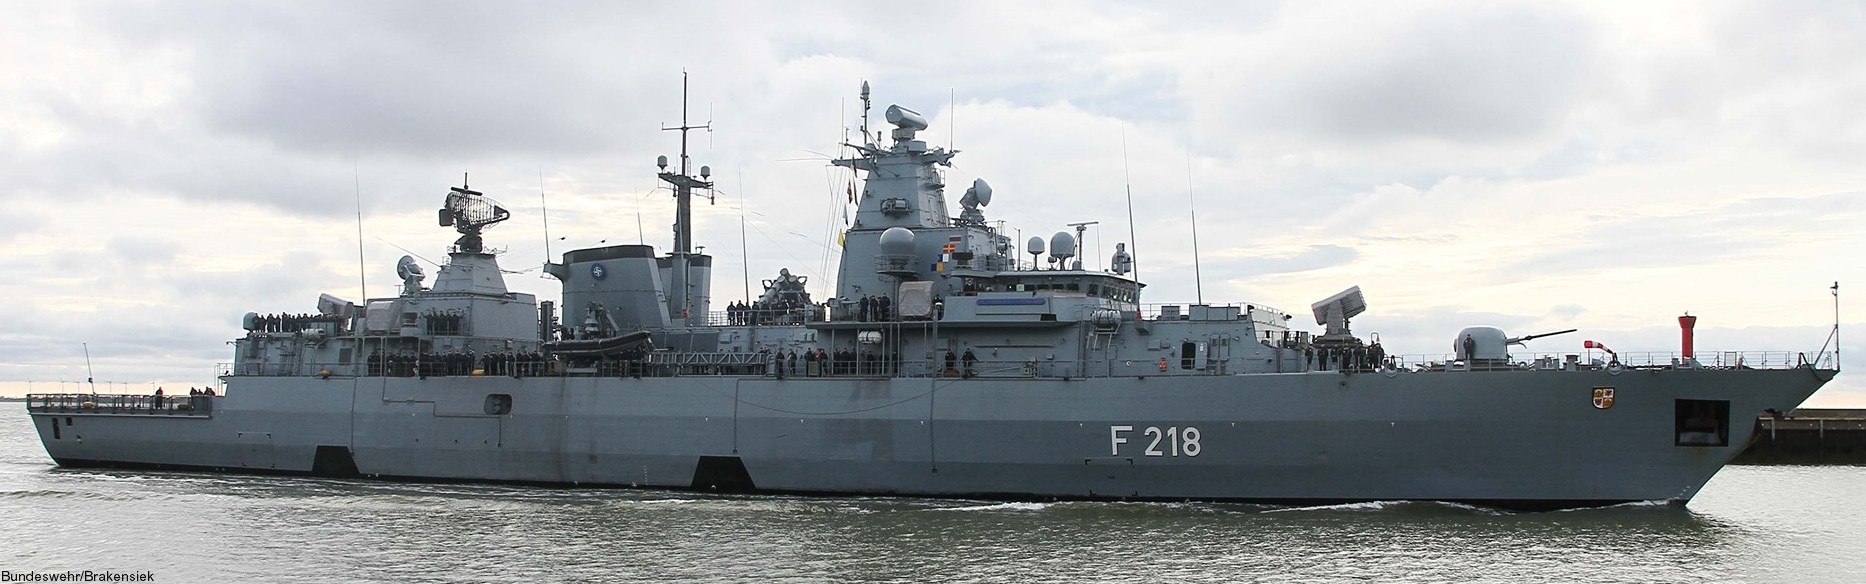 f-218 fgs mecklenburg vorpommern type 123 brandenburg class frigate german navy deutsche marine fregatte 32